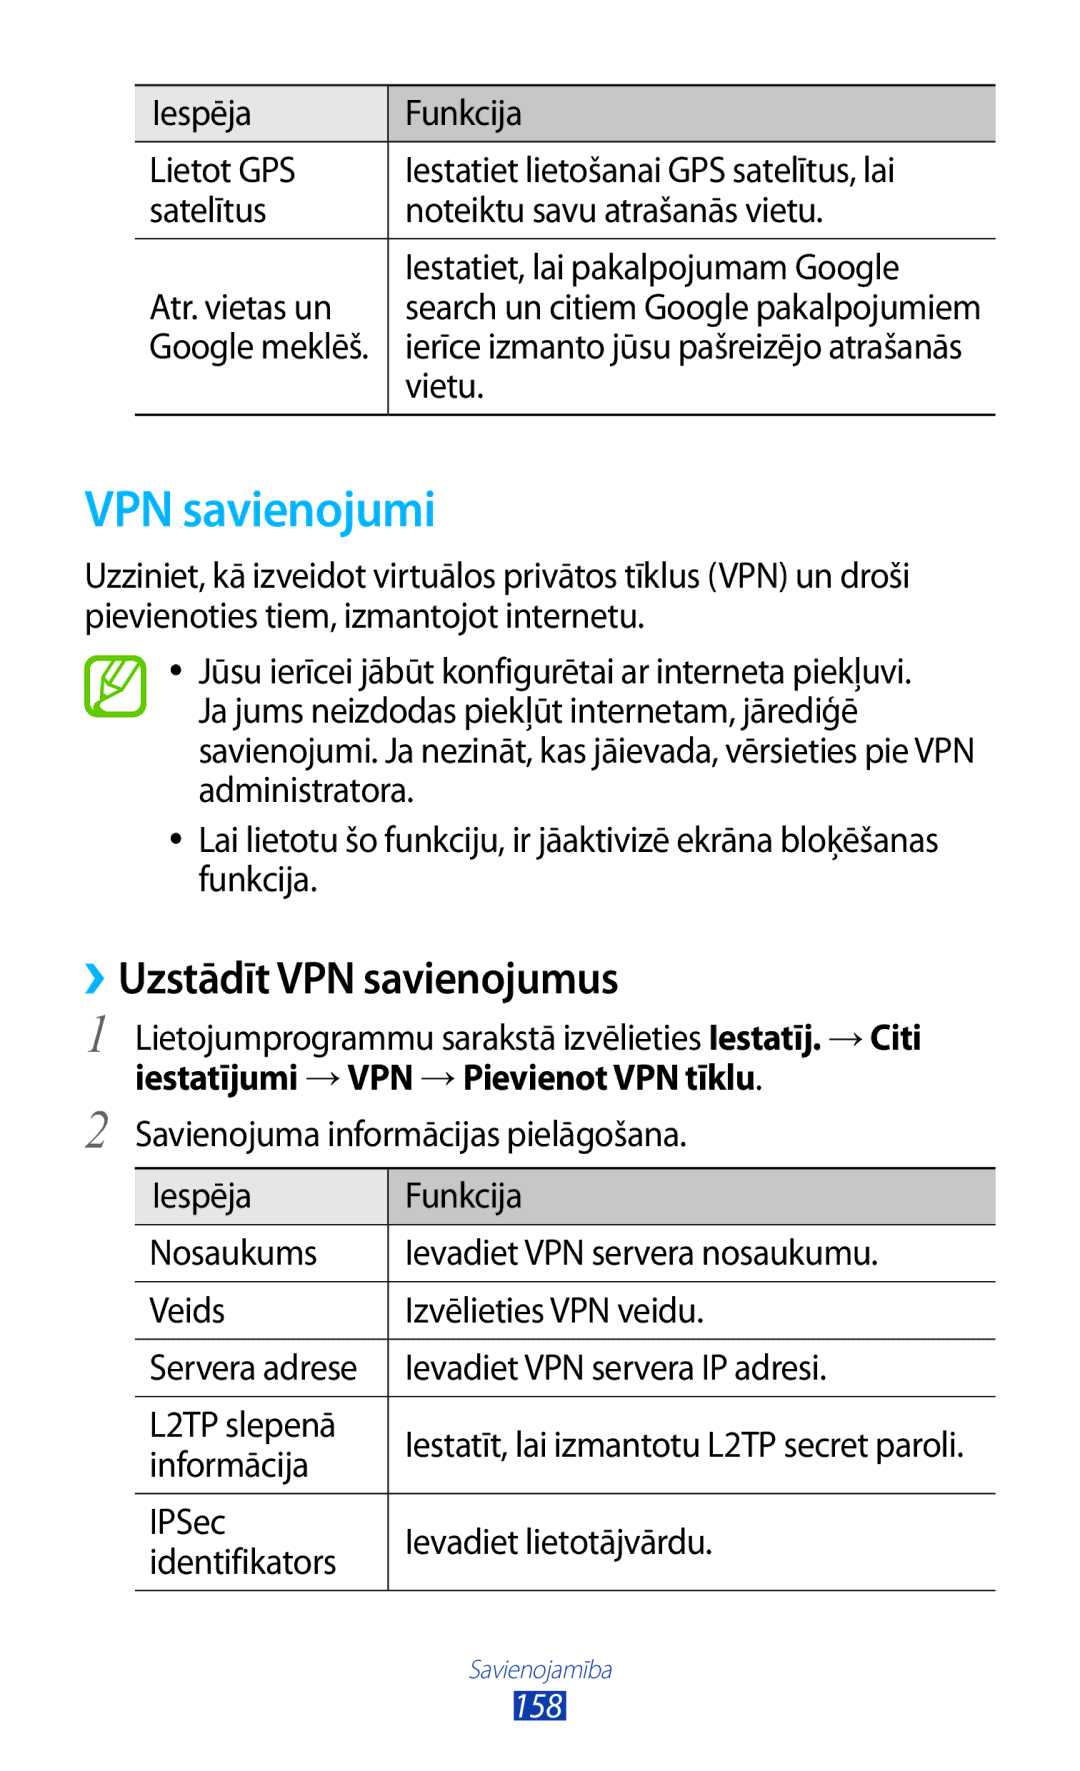 Samsung GT-N7000RWASEB, GT-N7000ZBASEB VPN savienojumi, ››Uzstādīt VPN savienojumus, Iestatījumi →VPN →Pievienot VPN tīklu 